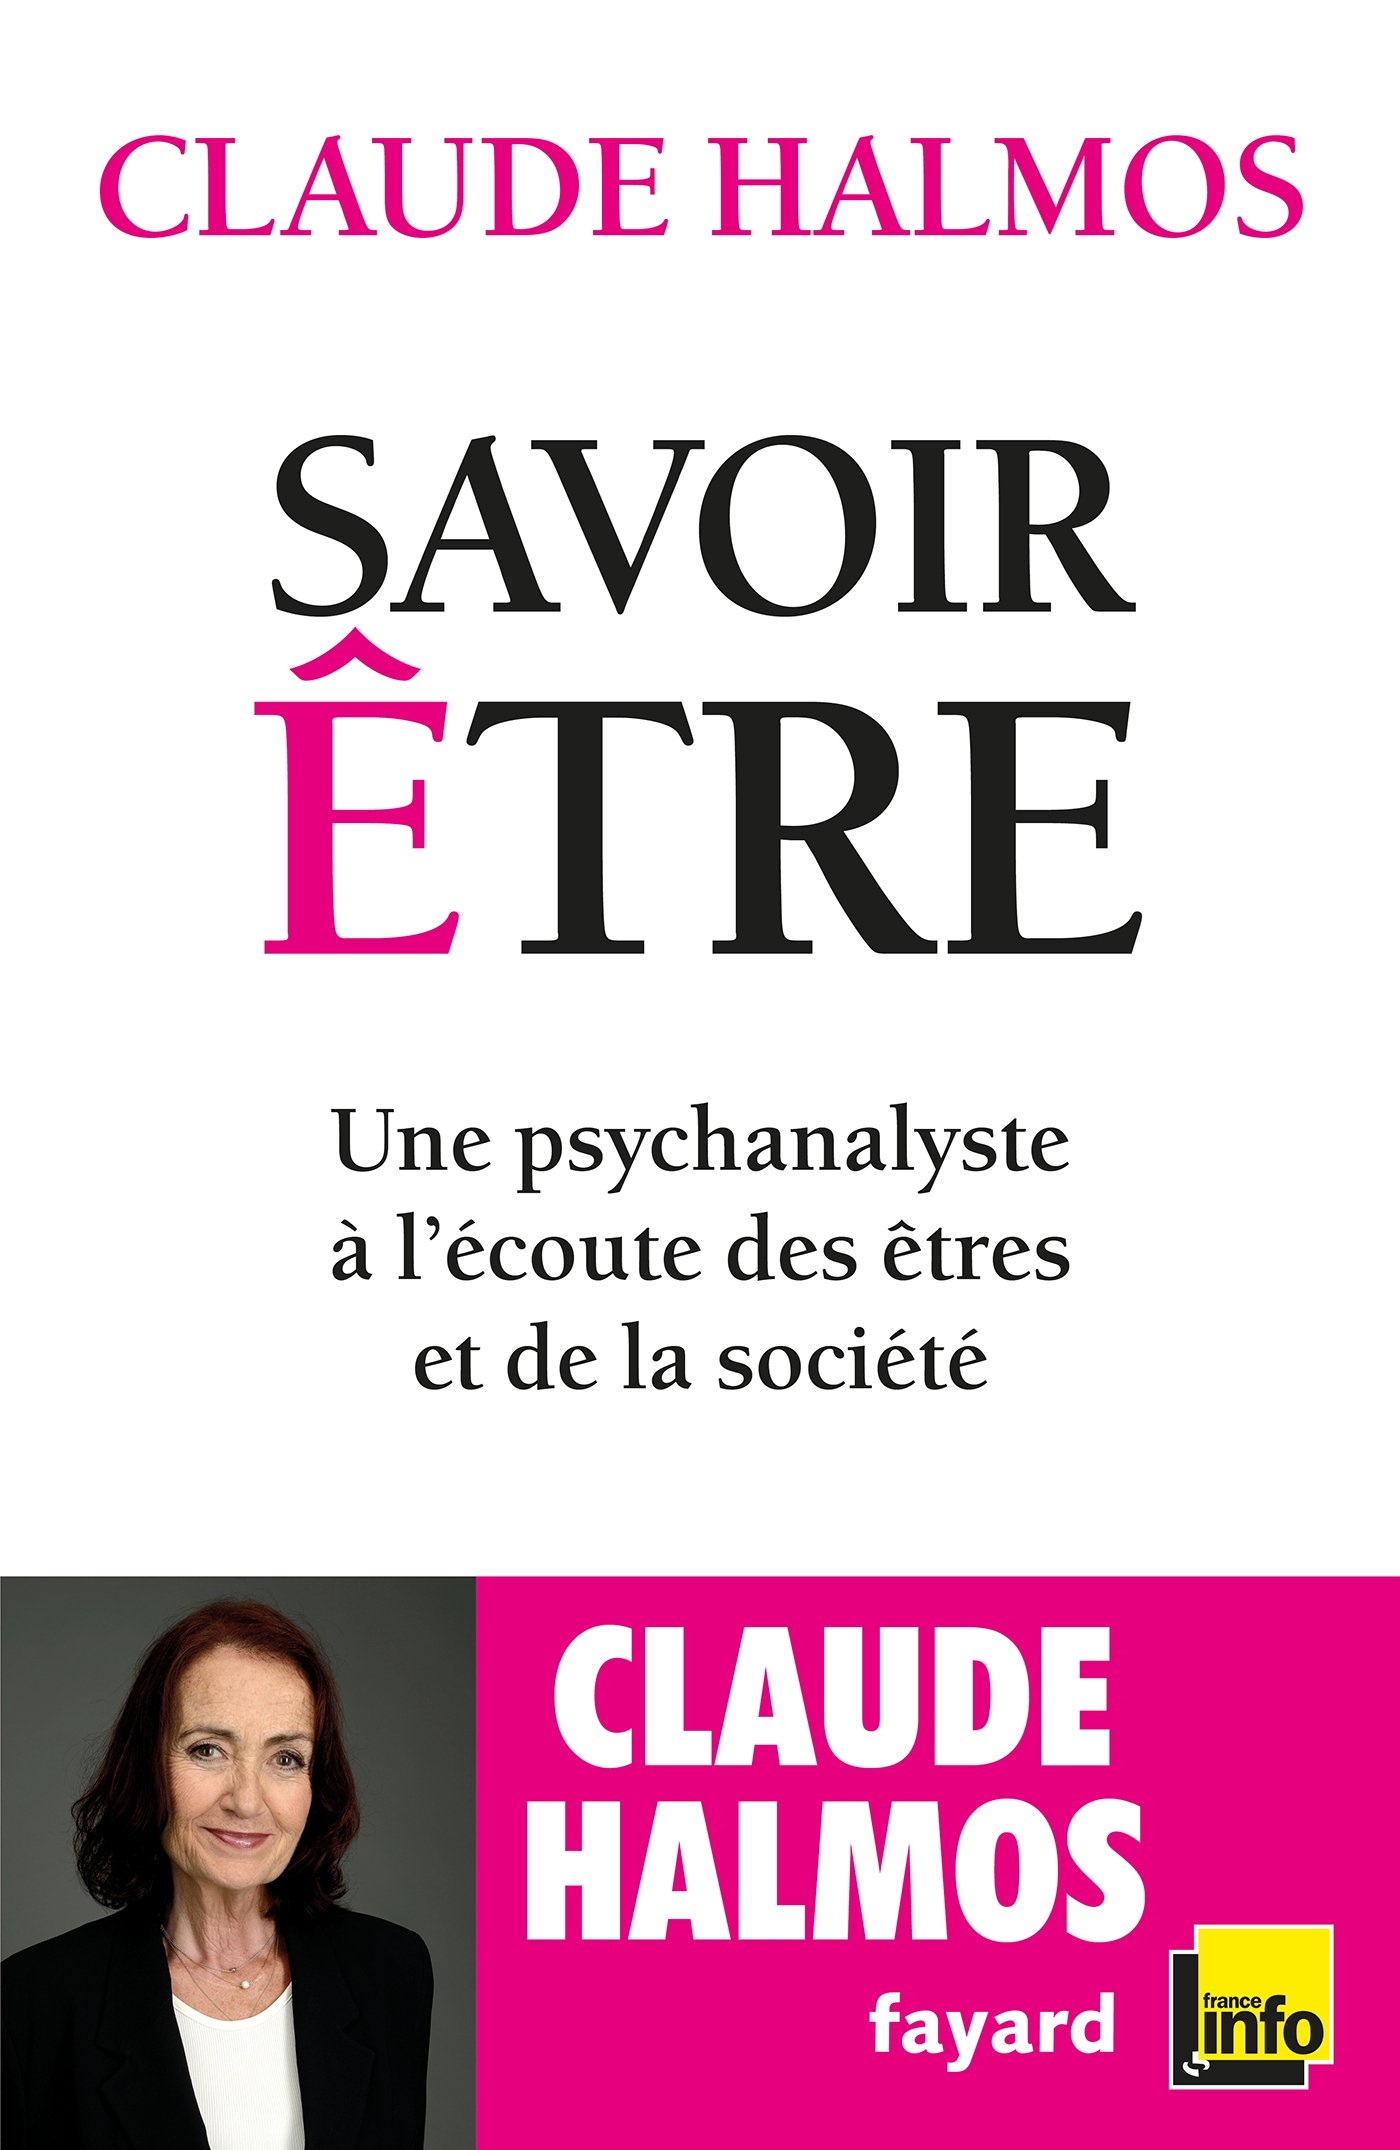 France Info : le "Savoir être" de Claude Halmos